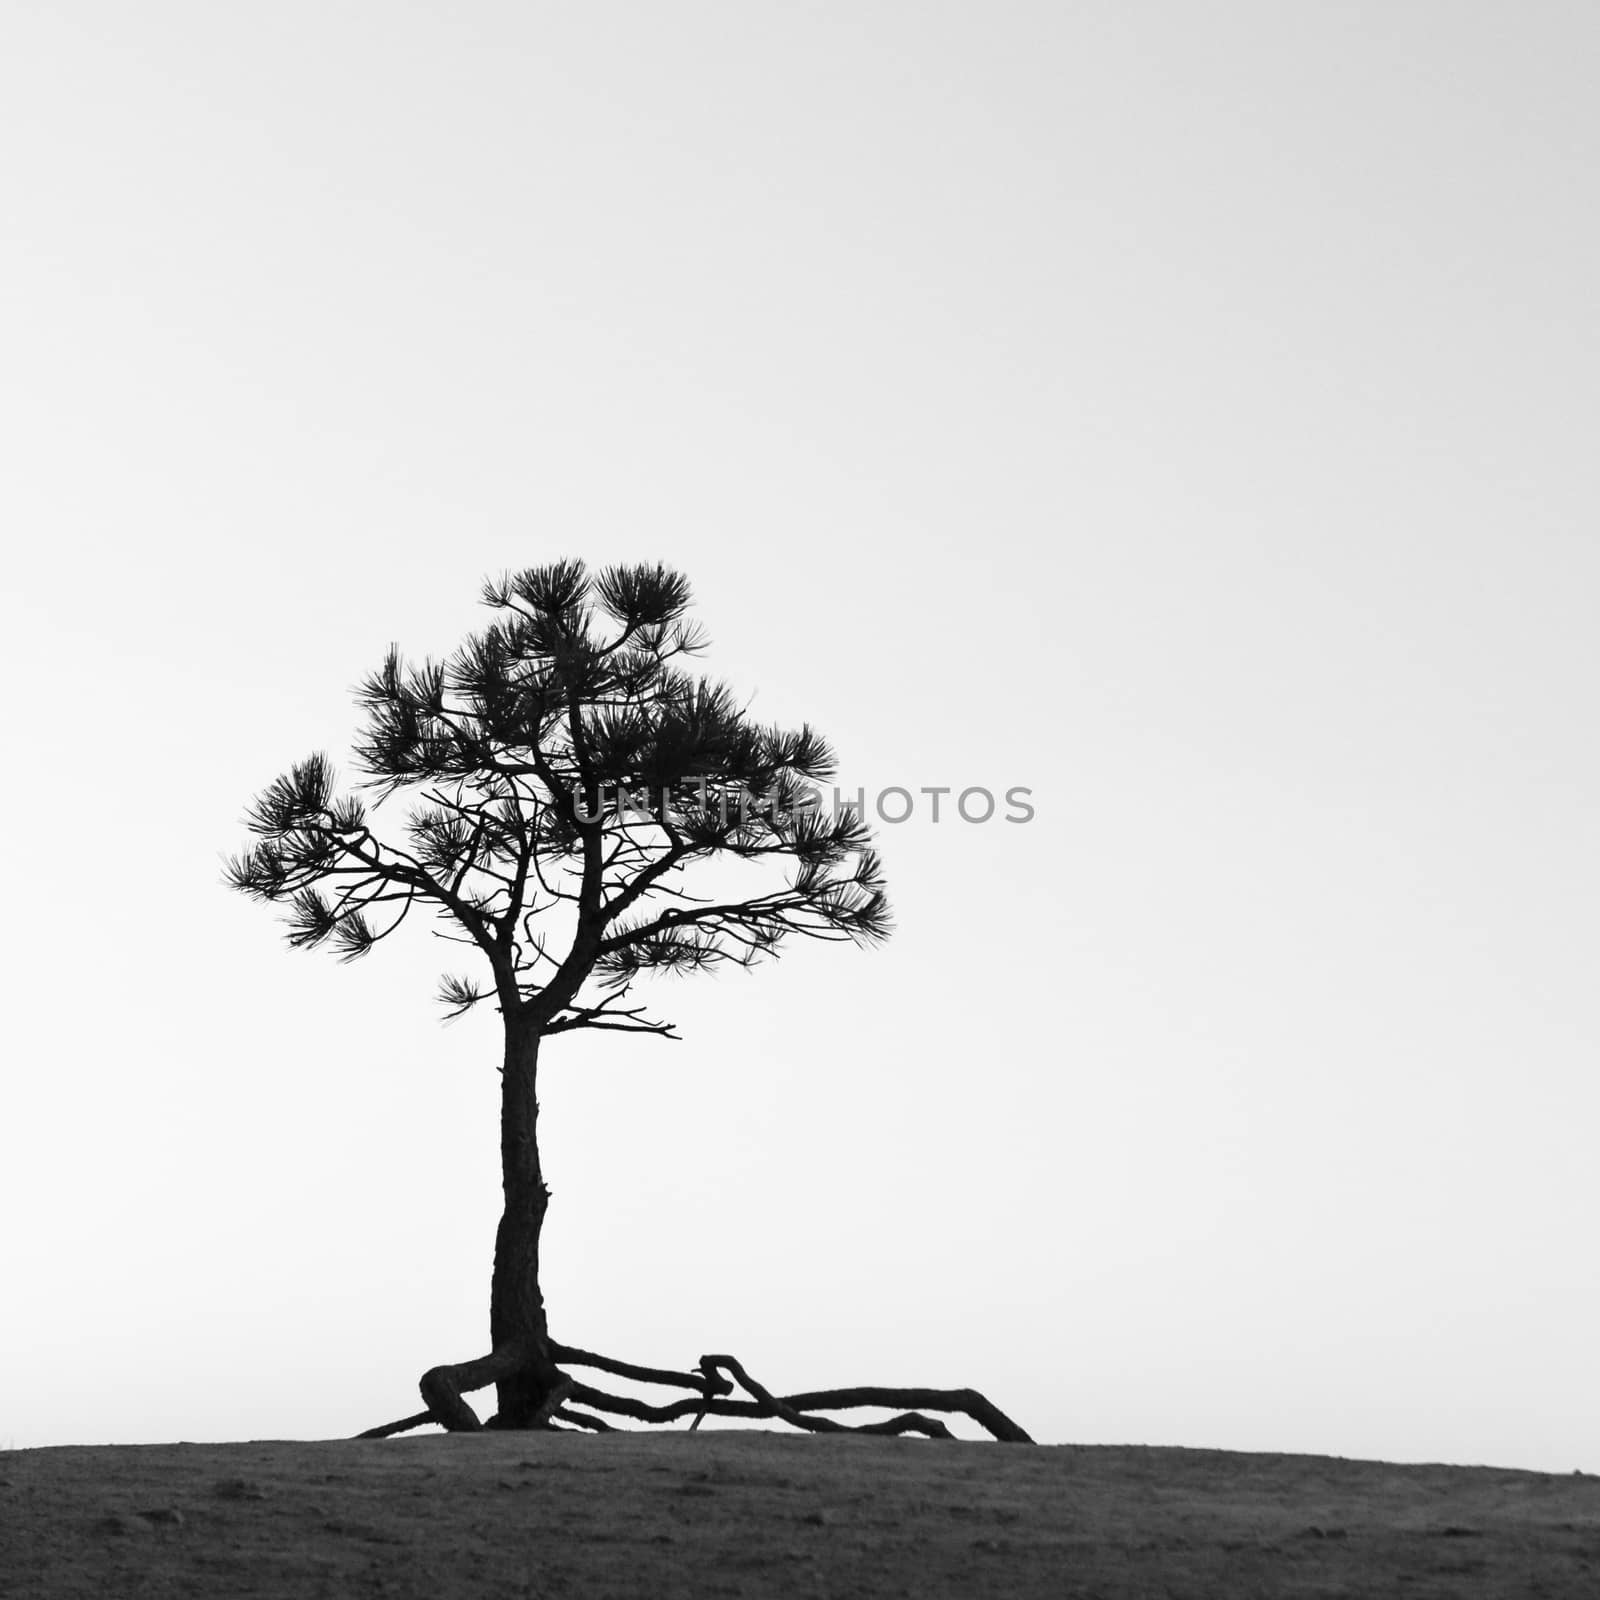 Tree growing on a rock by patricklienin